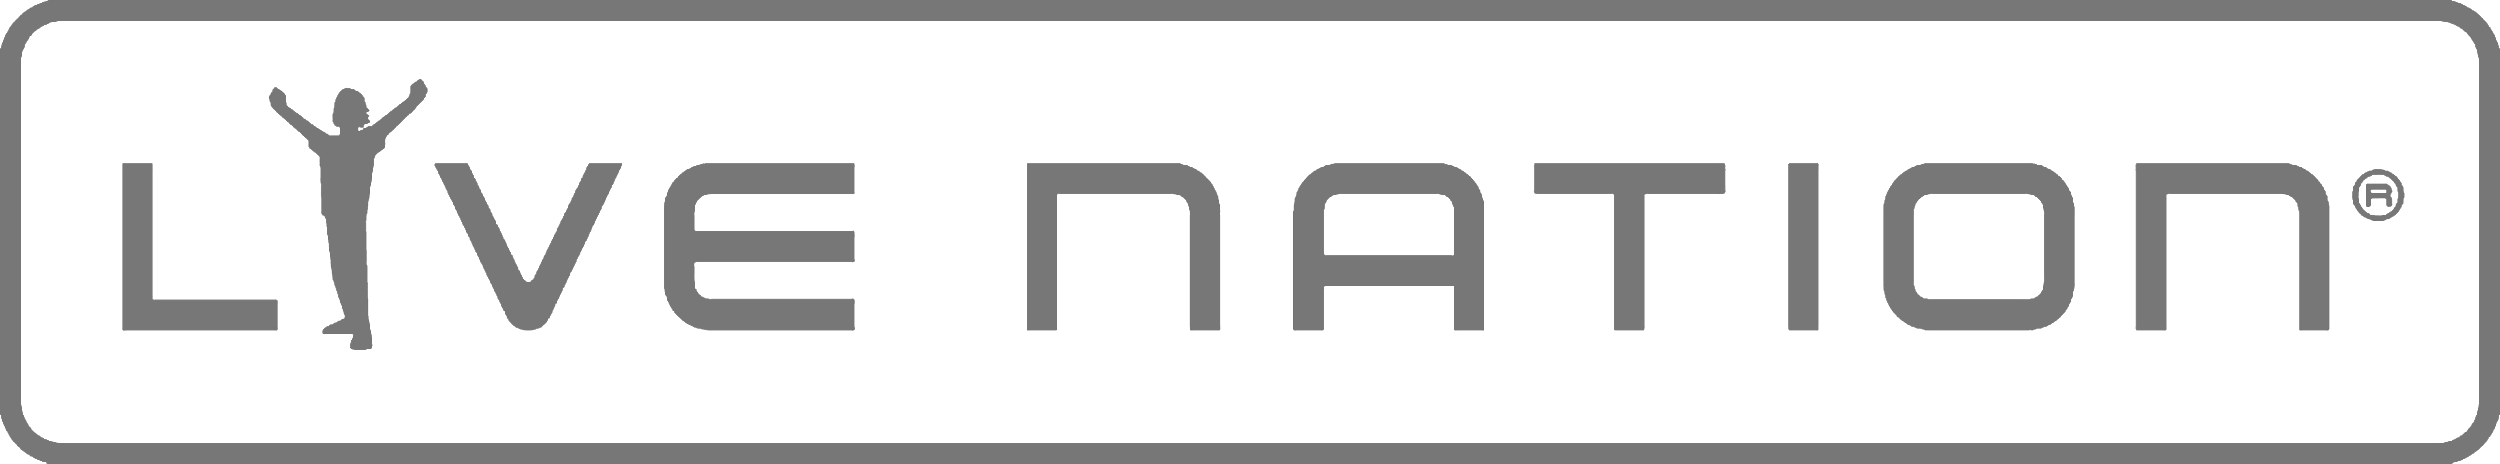 Live Nation logo.png